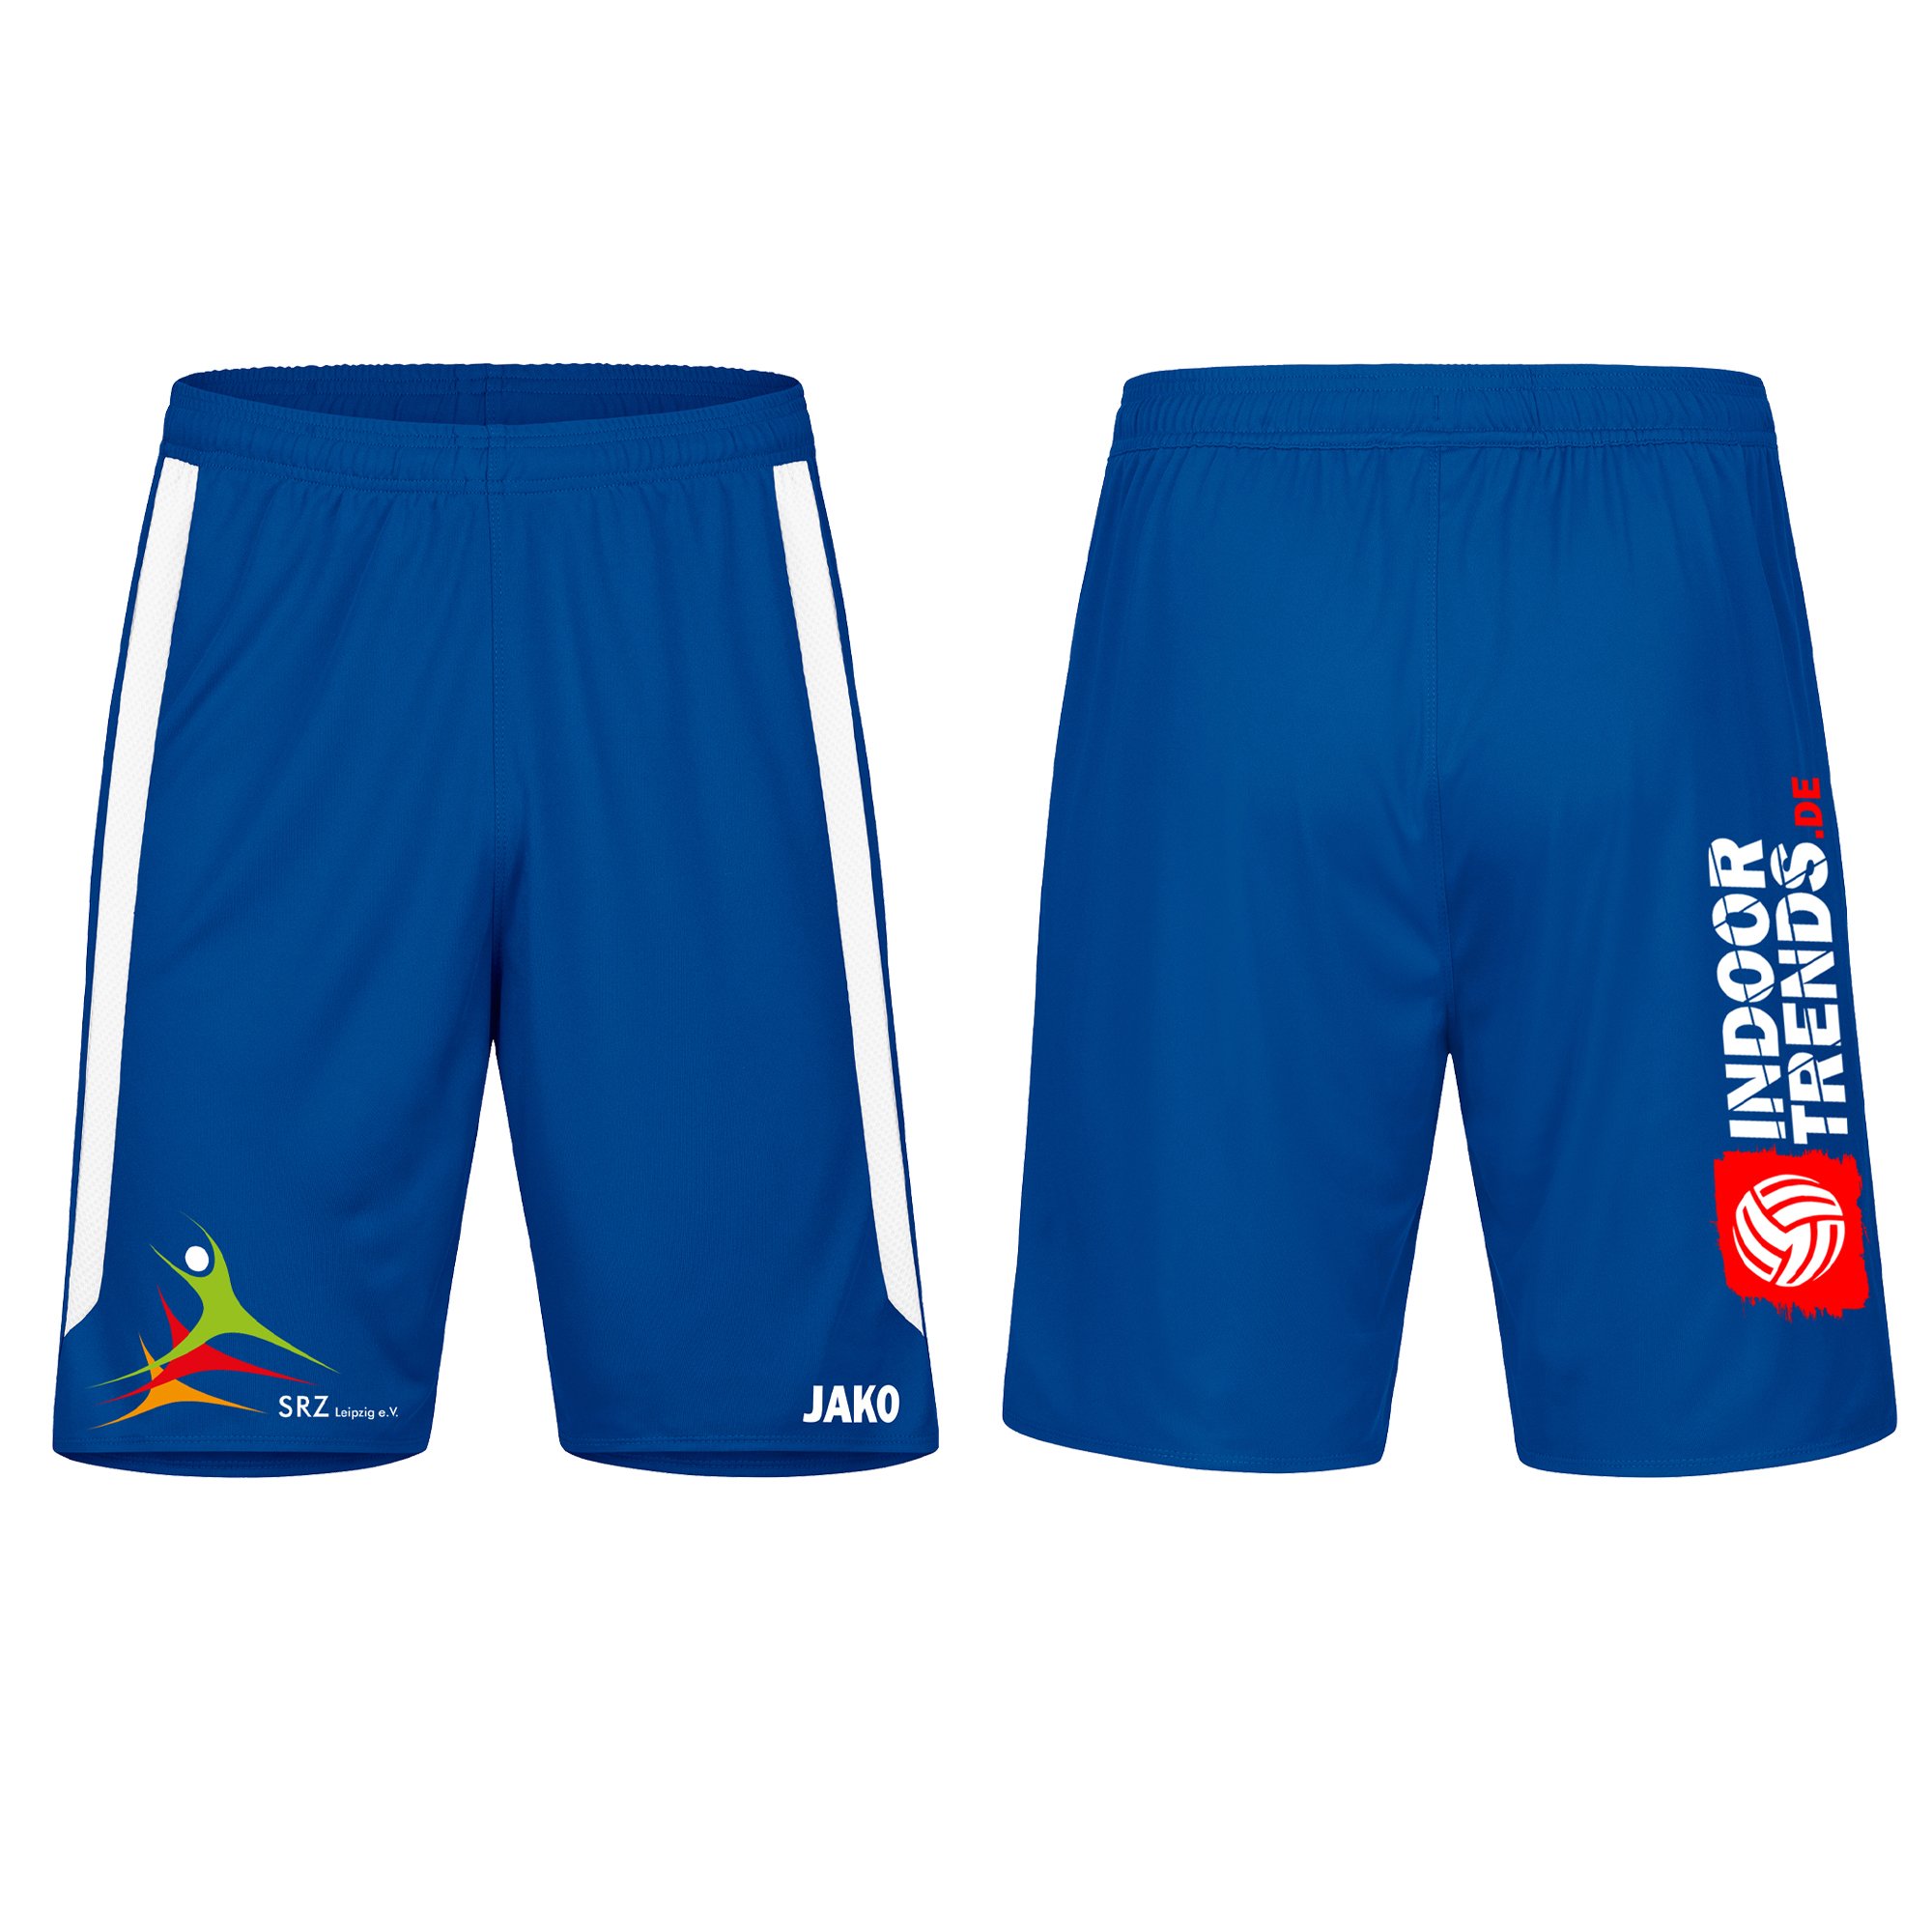 SG LVB Leipzig Shorts